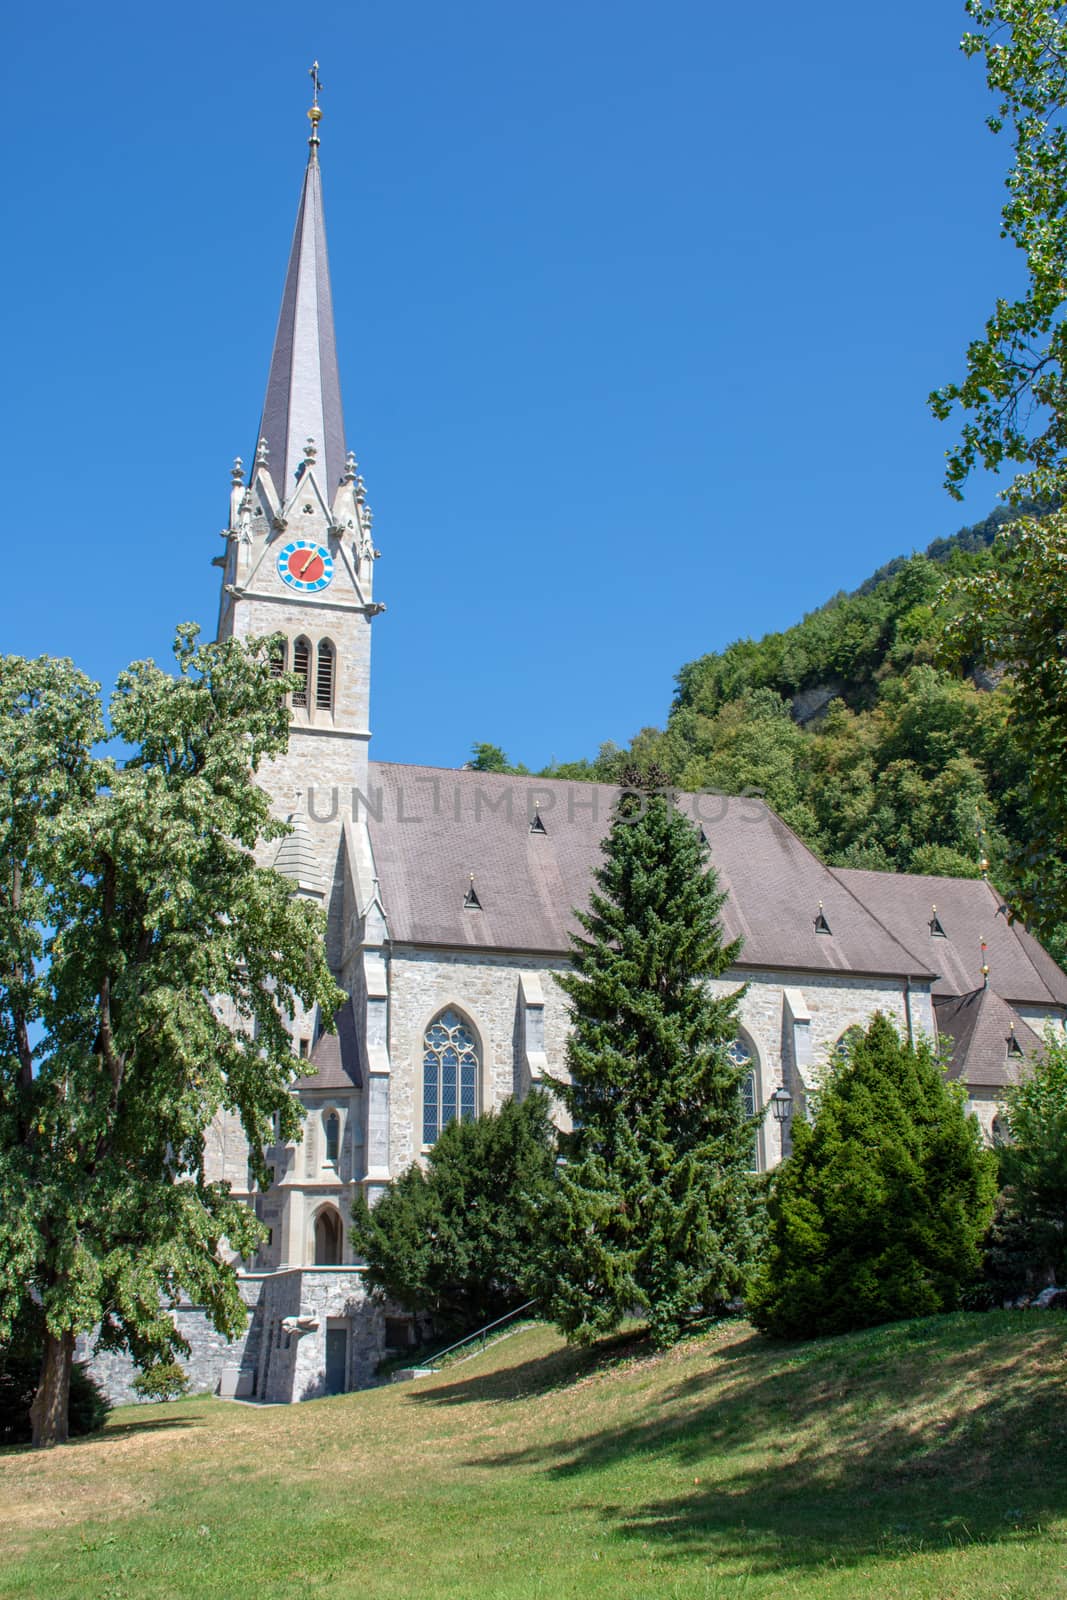 "Vaduz, Vaduz/Liechtenstein -  08/09/2018: Vaduz Cathedral in Liechtenstein near Switzerland on a sunny day with blue skies."